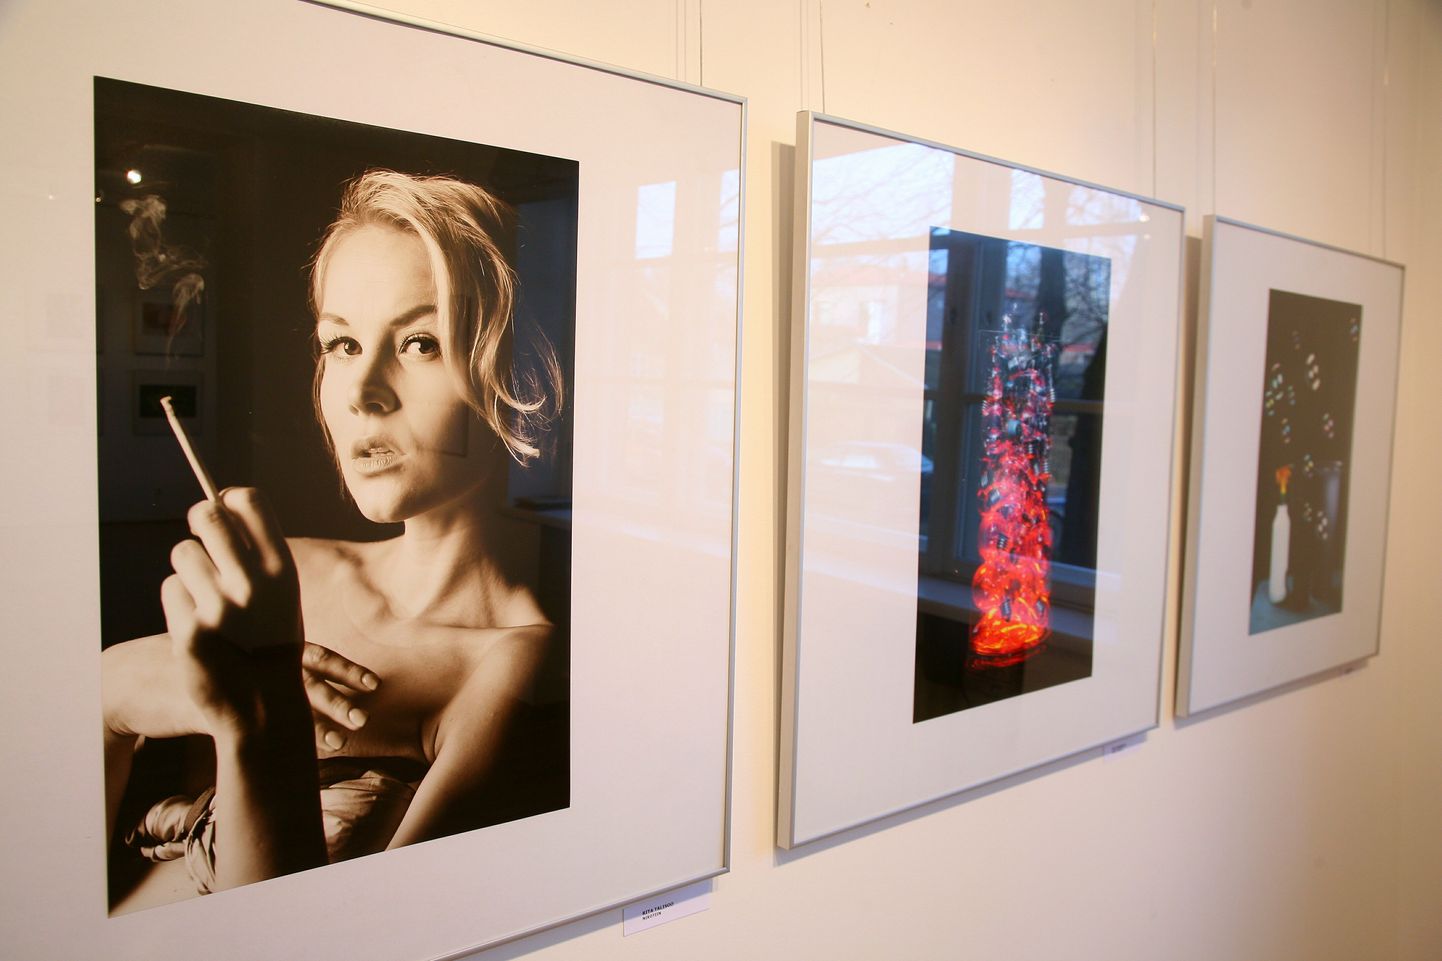 Fotonäitusel "Pärnumaa foto 2012" näeb 38 autori töid.